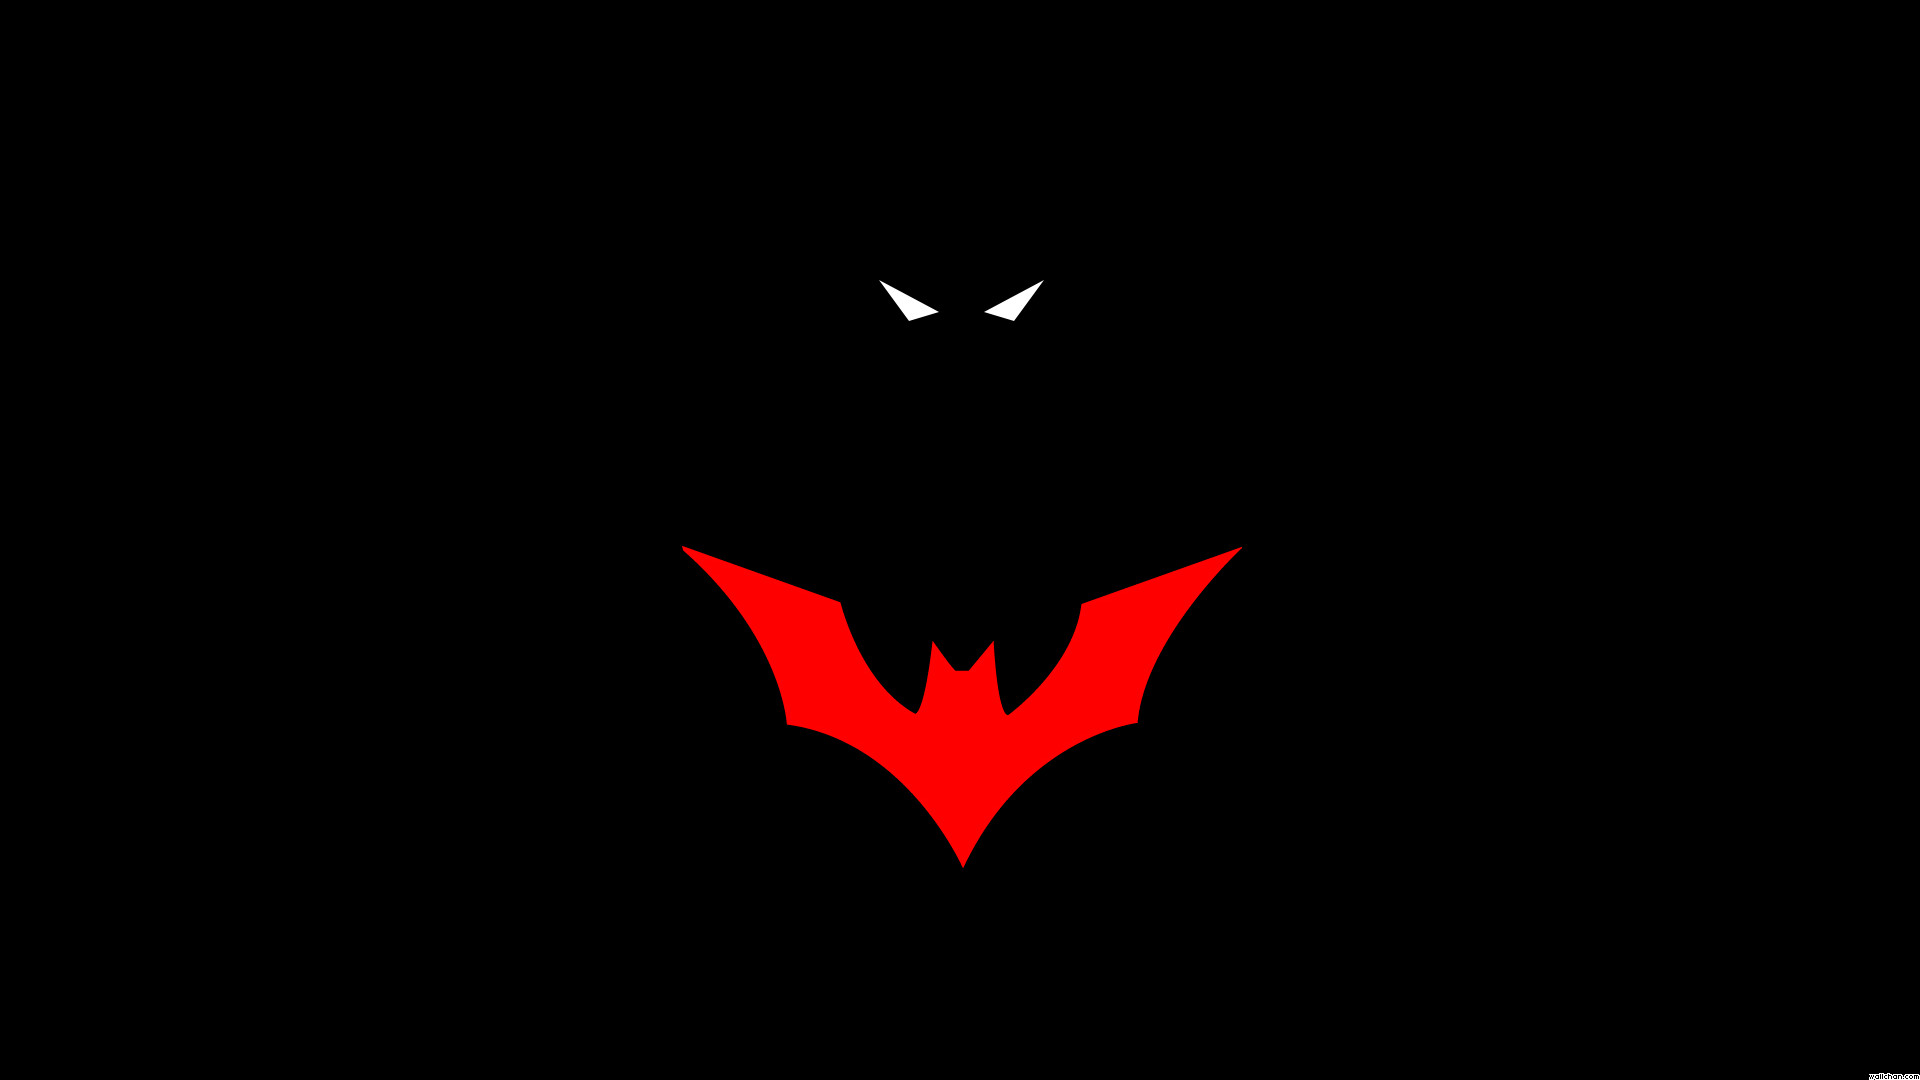 Batman Beyond Backgrounds HQFX px